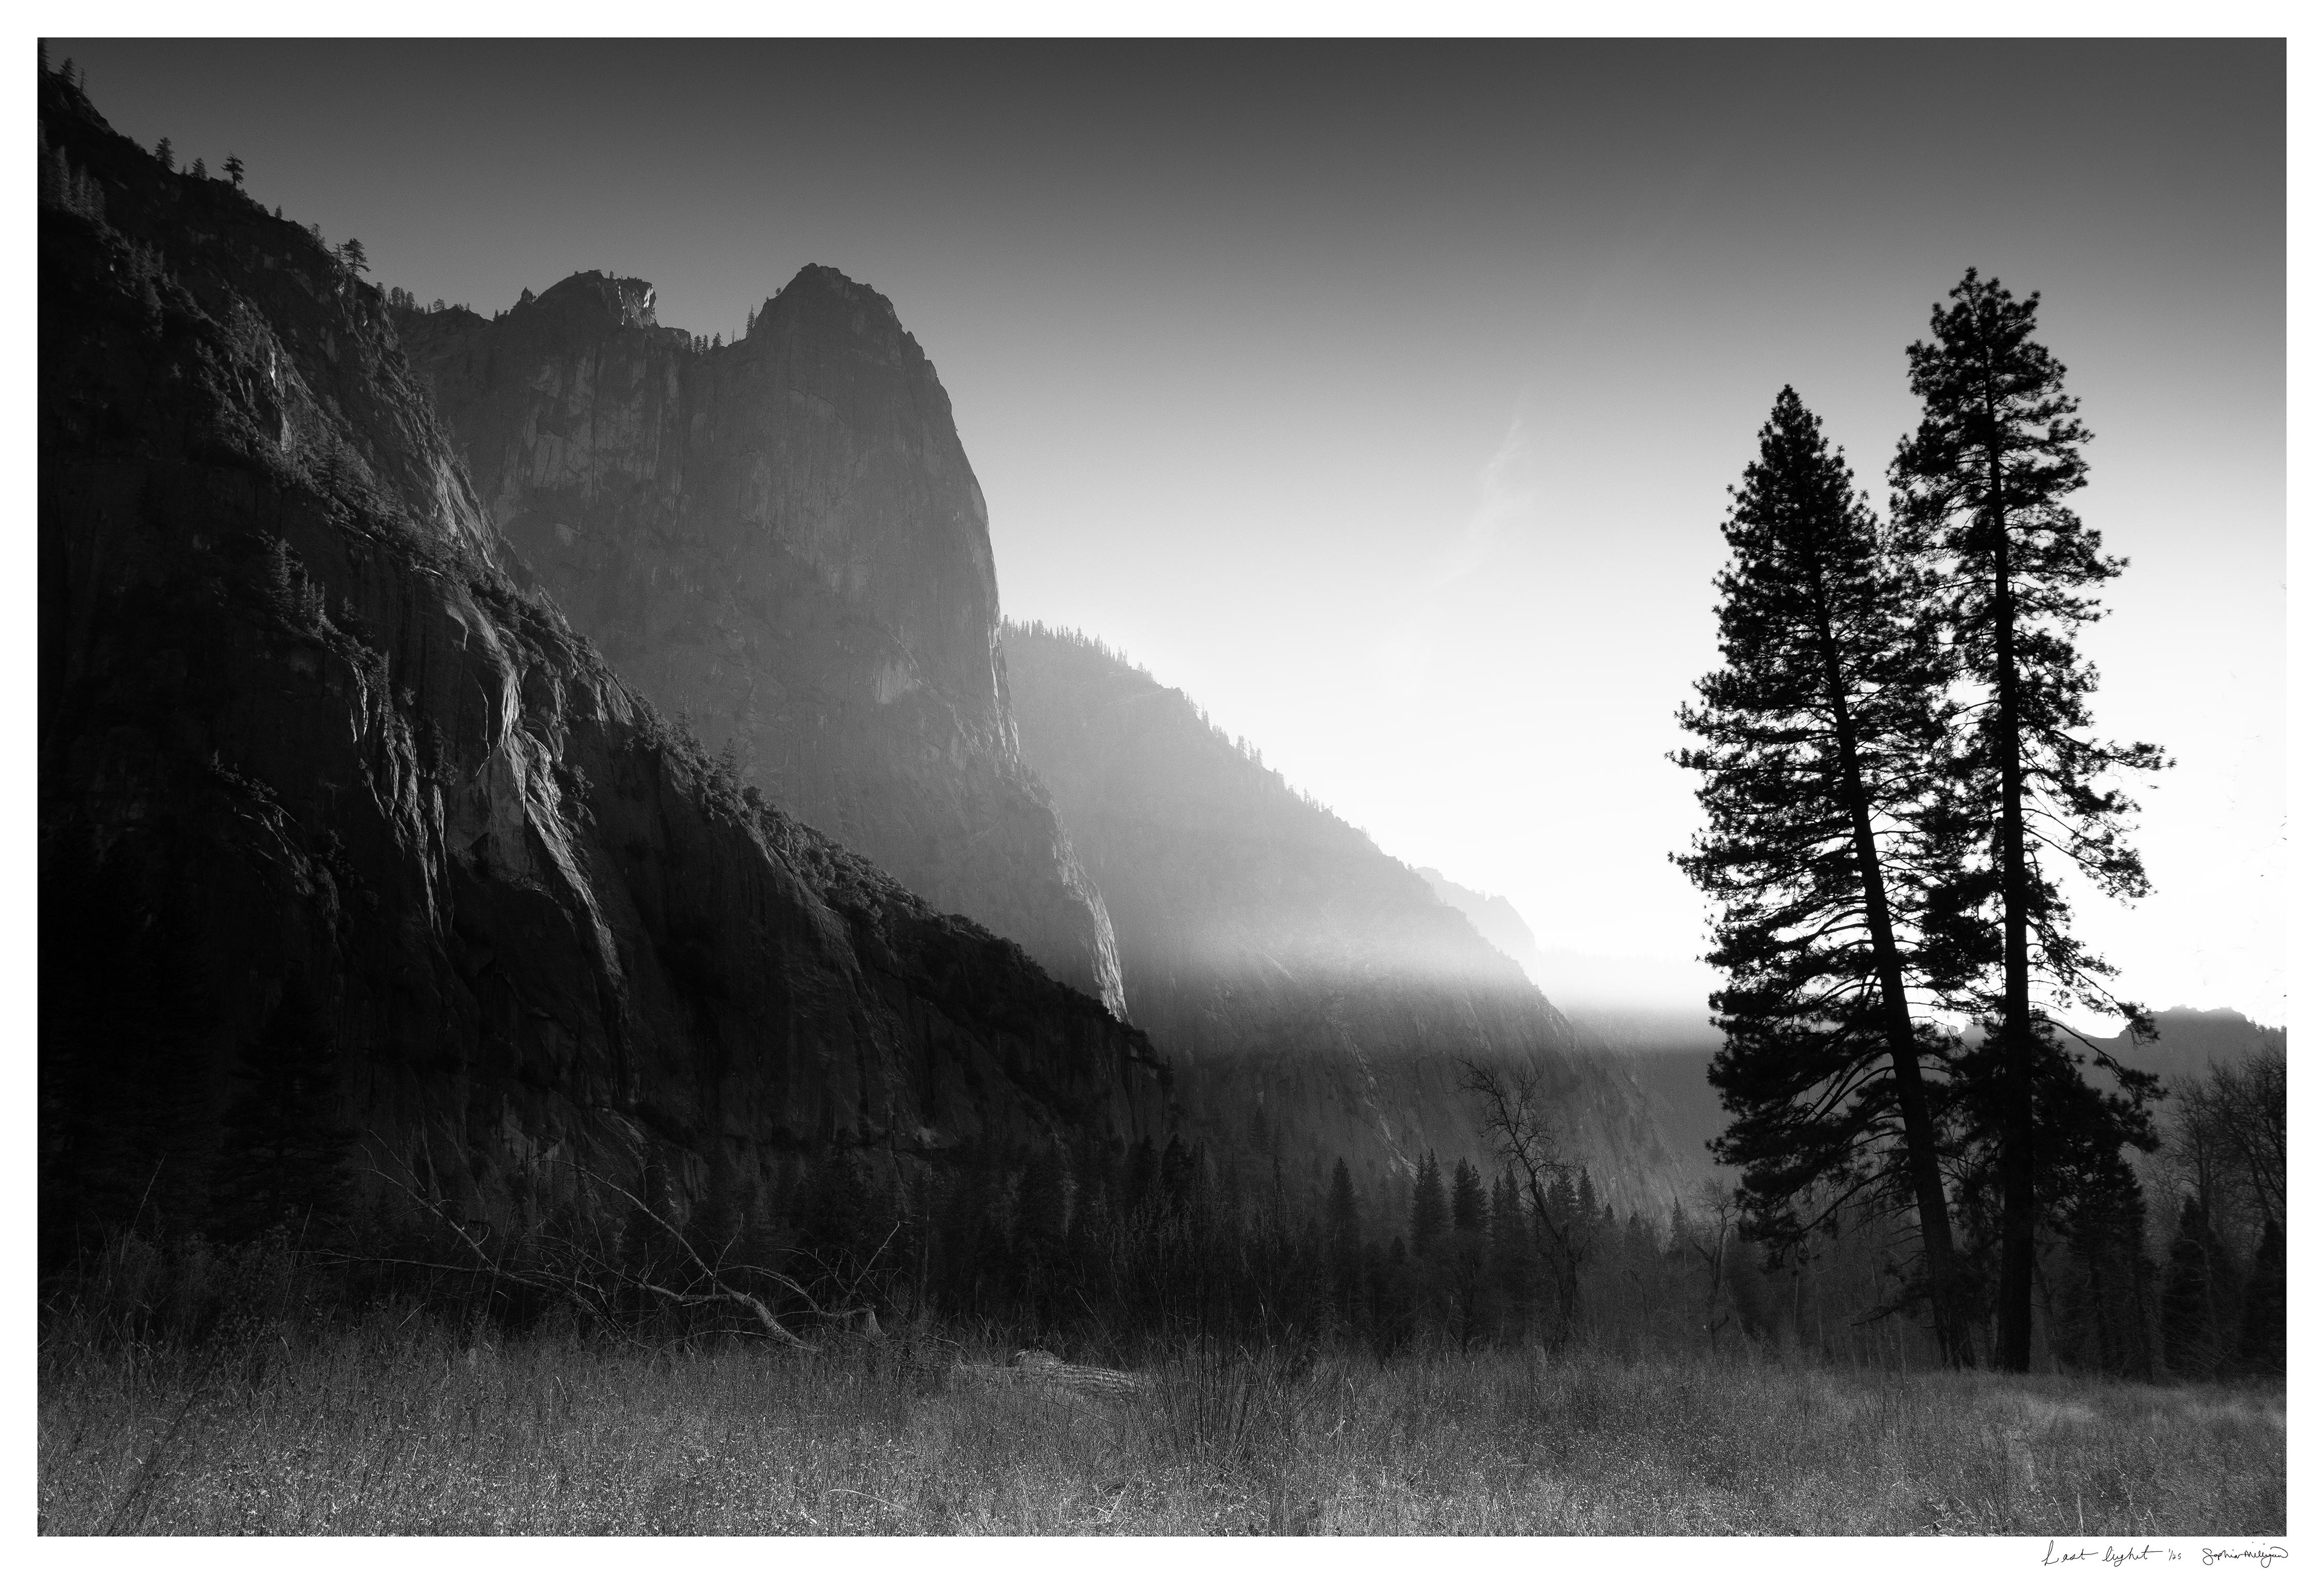 Landscape Photograph Sophia Milligan - photographie en édition limitée « Last Light ». Paysage d'arbres de la Yosemite